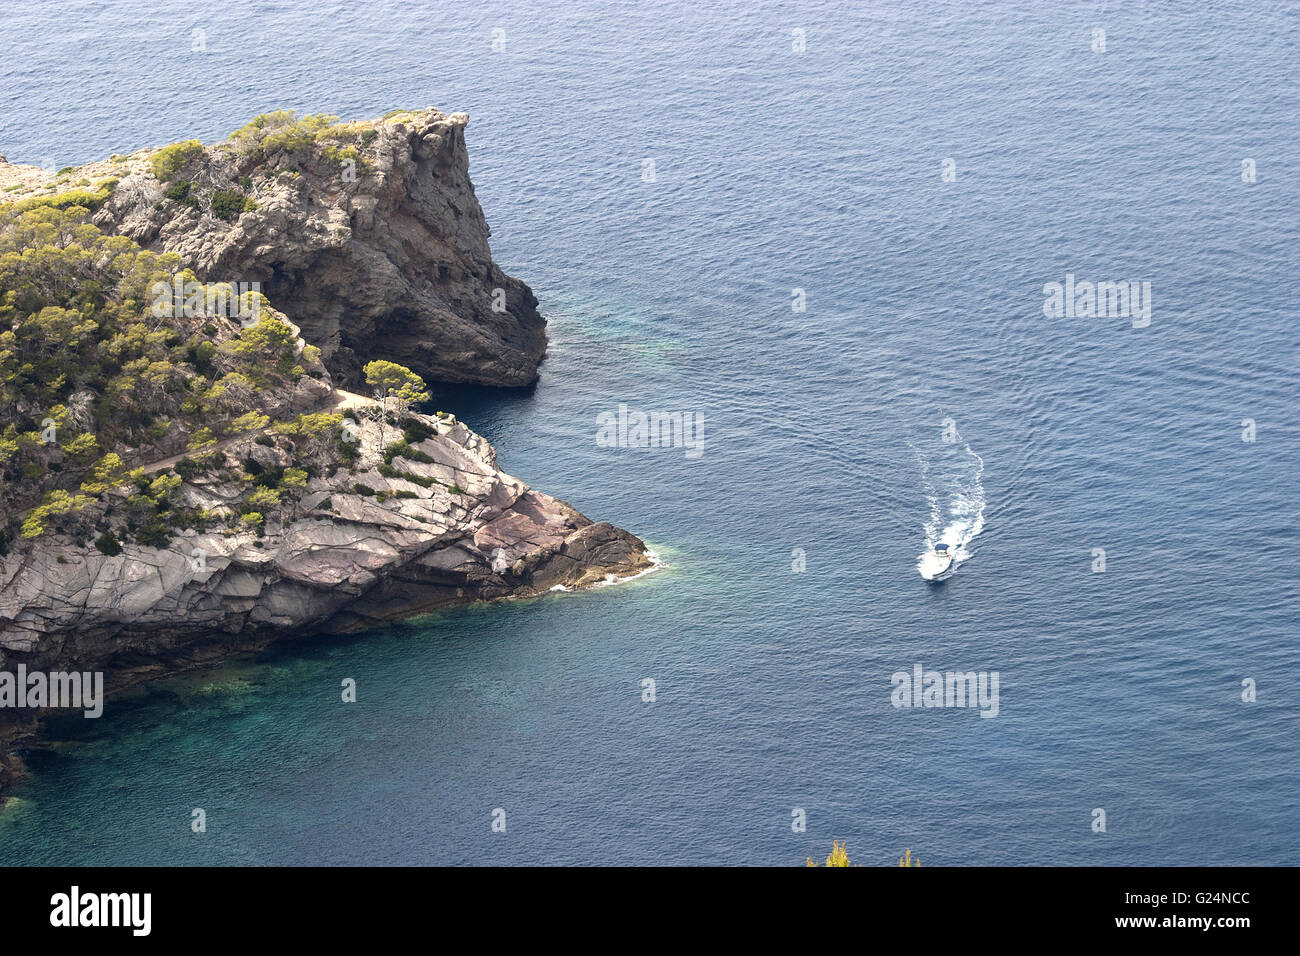 Una bella immagine della costa da una distanza con un piccolo yacht passando per la vegetazione e le rocce in Palma de Mallorca, Spagna Foto Stock